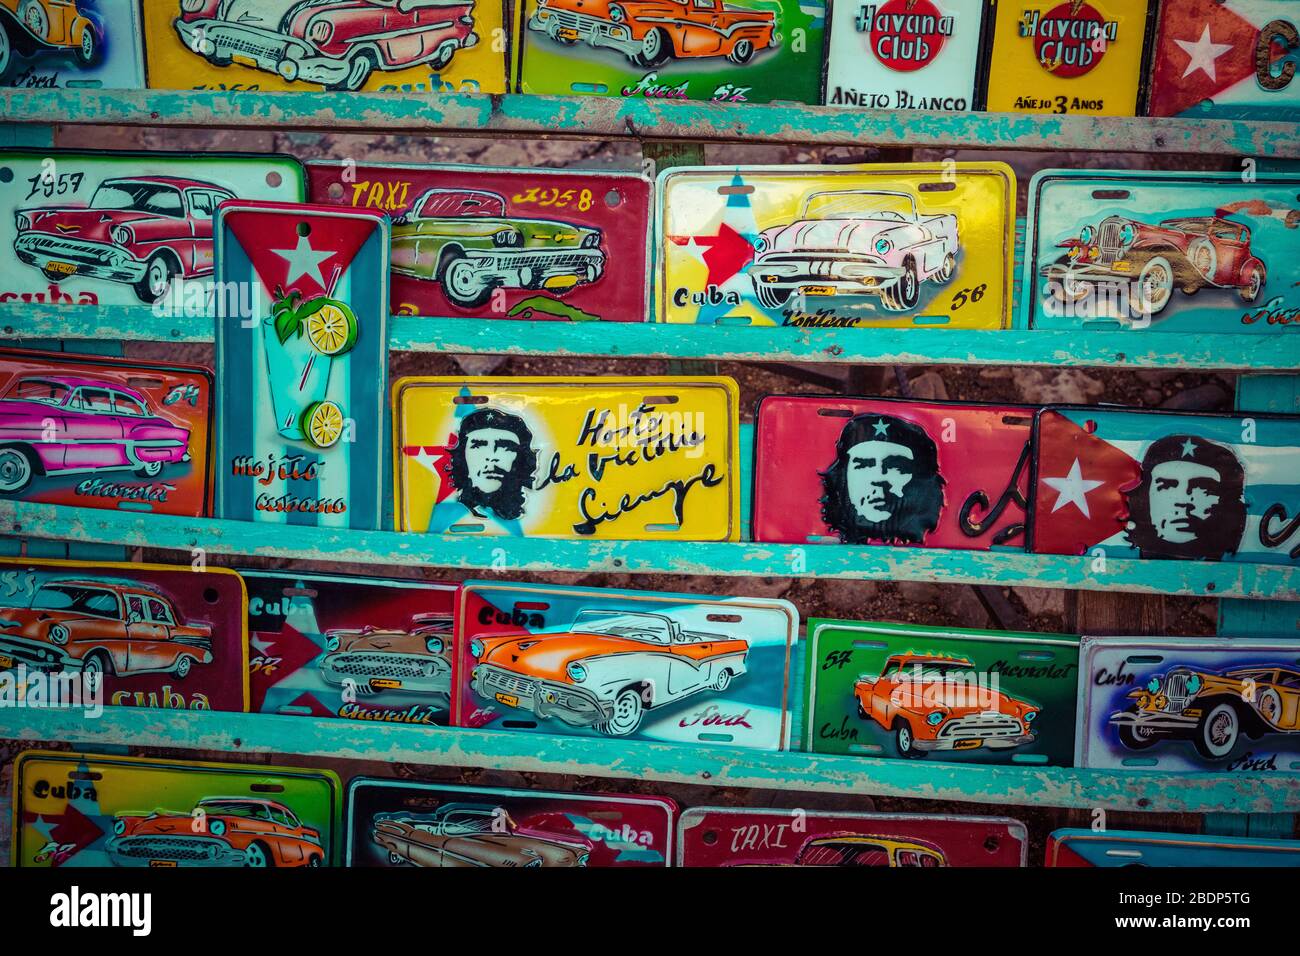 TRINIDAD, CUBA - 10 DÉCEMBRE 2019: Des plaques d'immatriculation traditionnelles pour véhicules artisanaux comme des souvenirs à vendre à Trinidad, Cuba. Banque D'Images